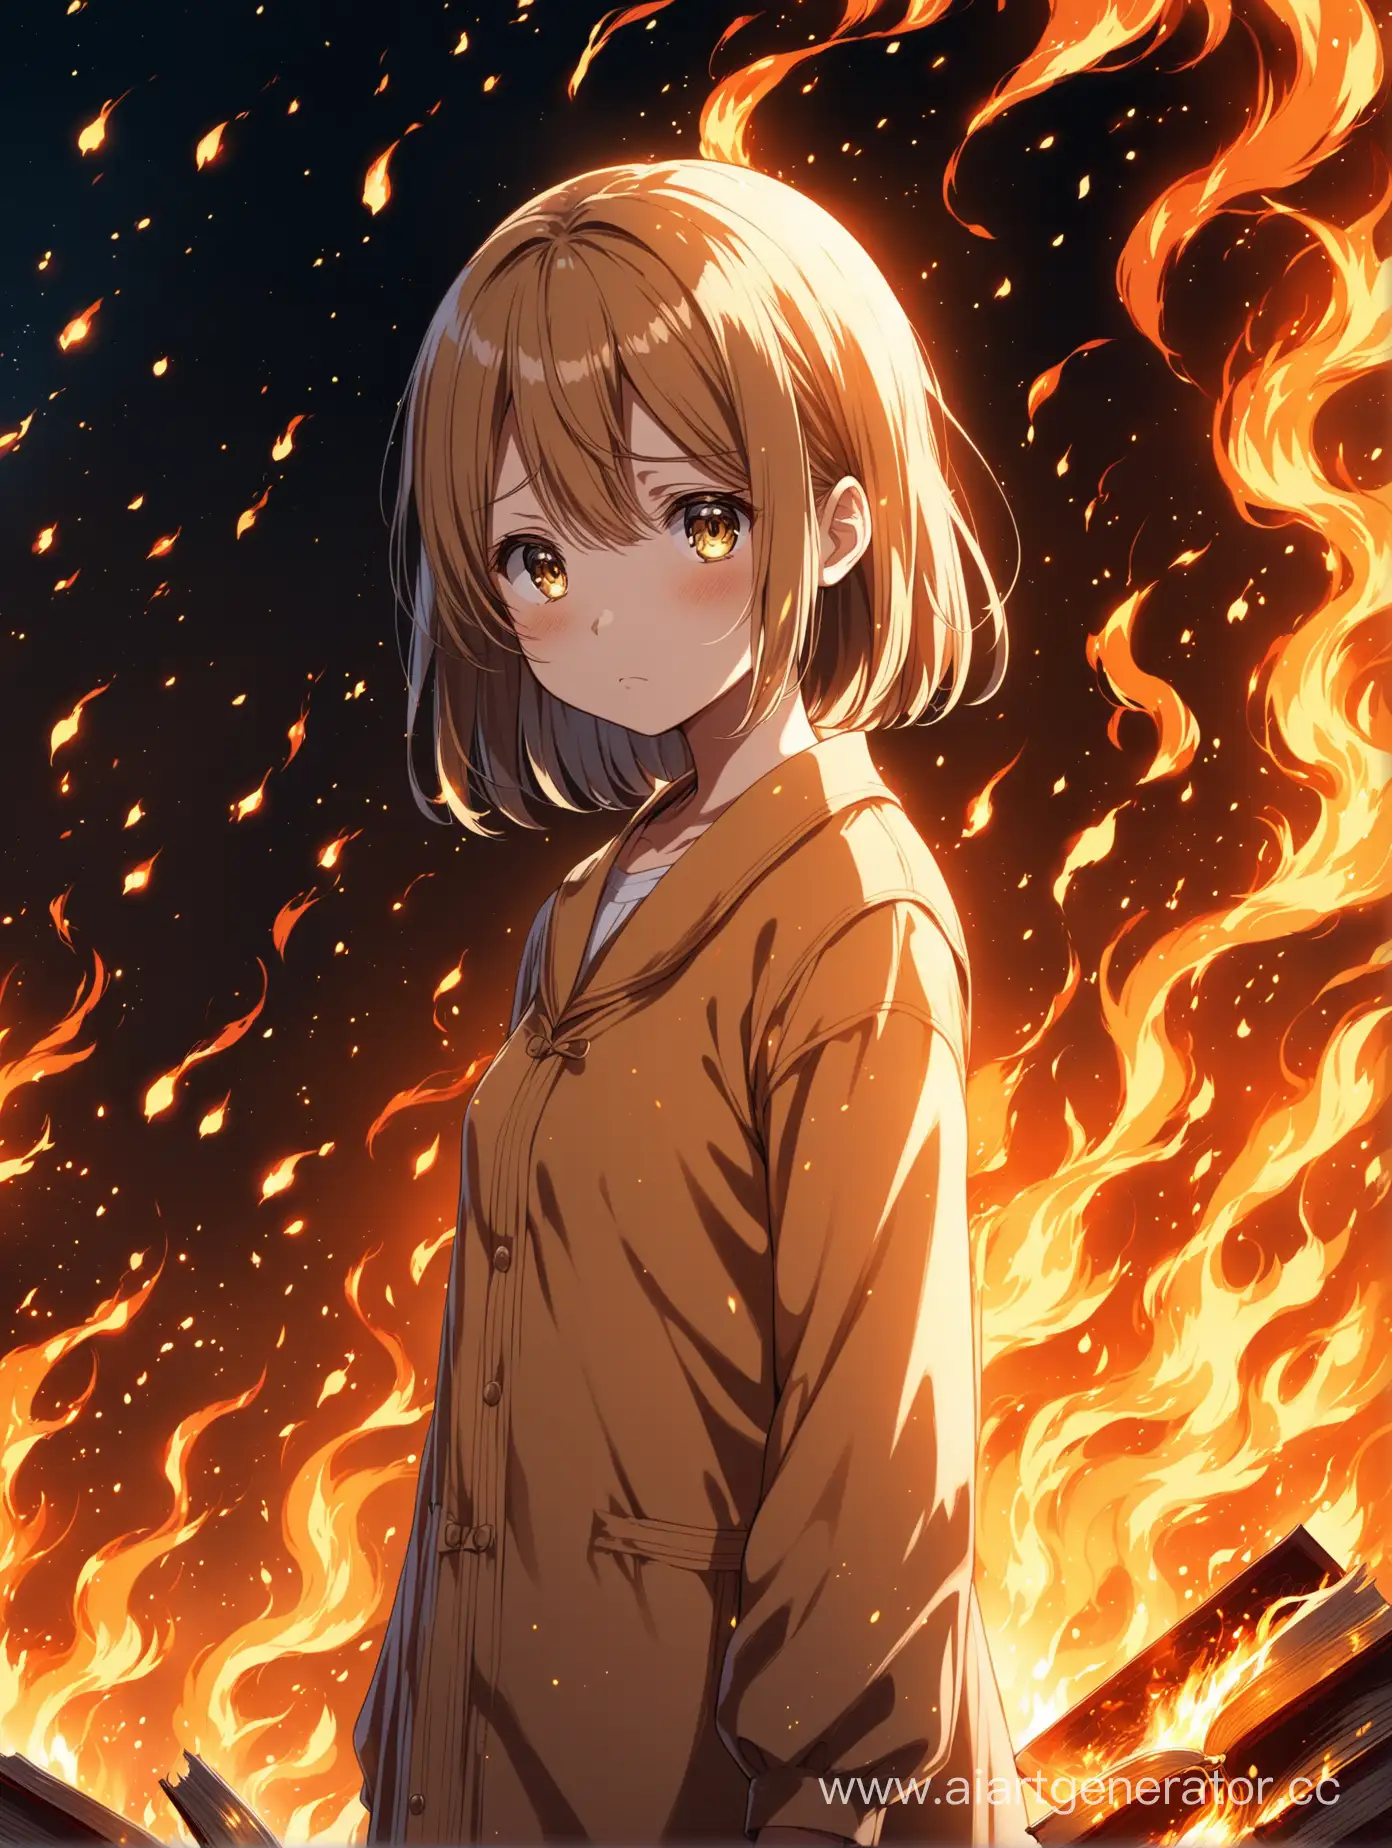 Аниме девочка стоящая с огнем, но при этом чем-то грустная, смотрит куда-то. Обложка для книги